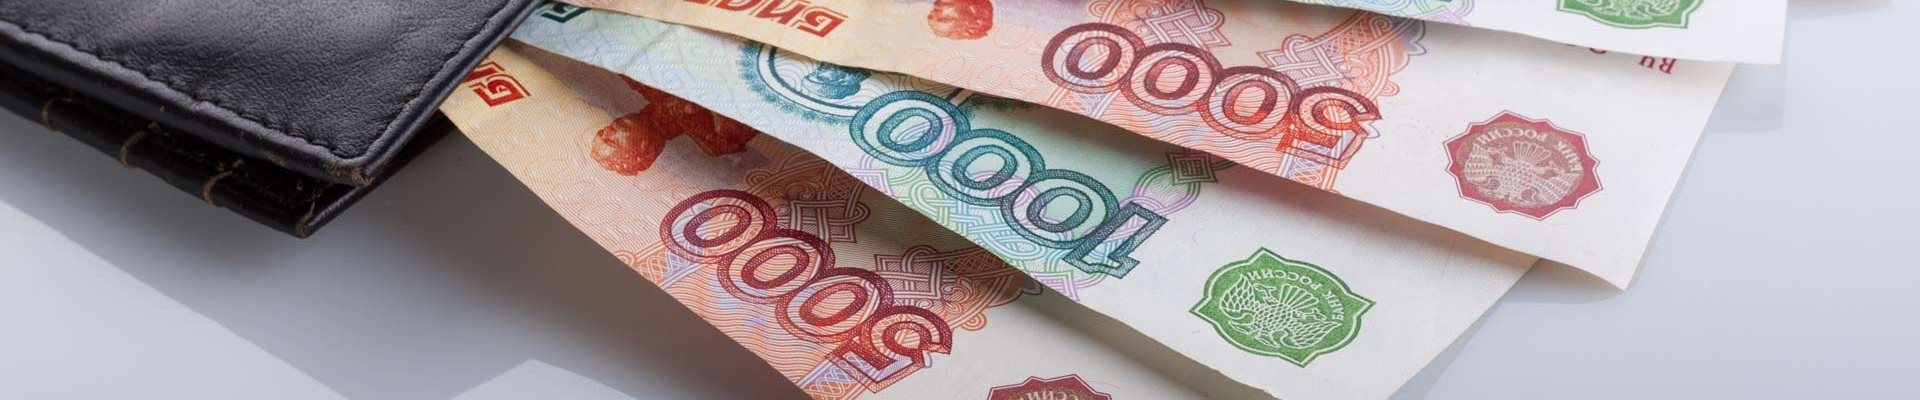 Вице-премьер Марат Хуснуллин считает высокие кредитные ставки главной причиной того, что арендное жильё в РФ не развивается